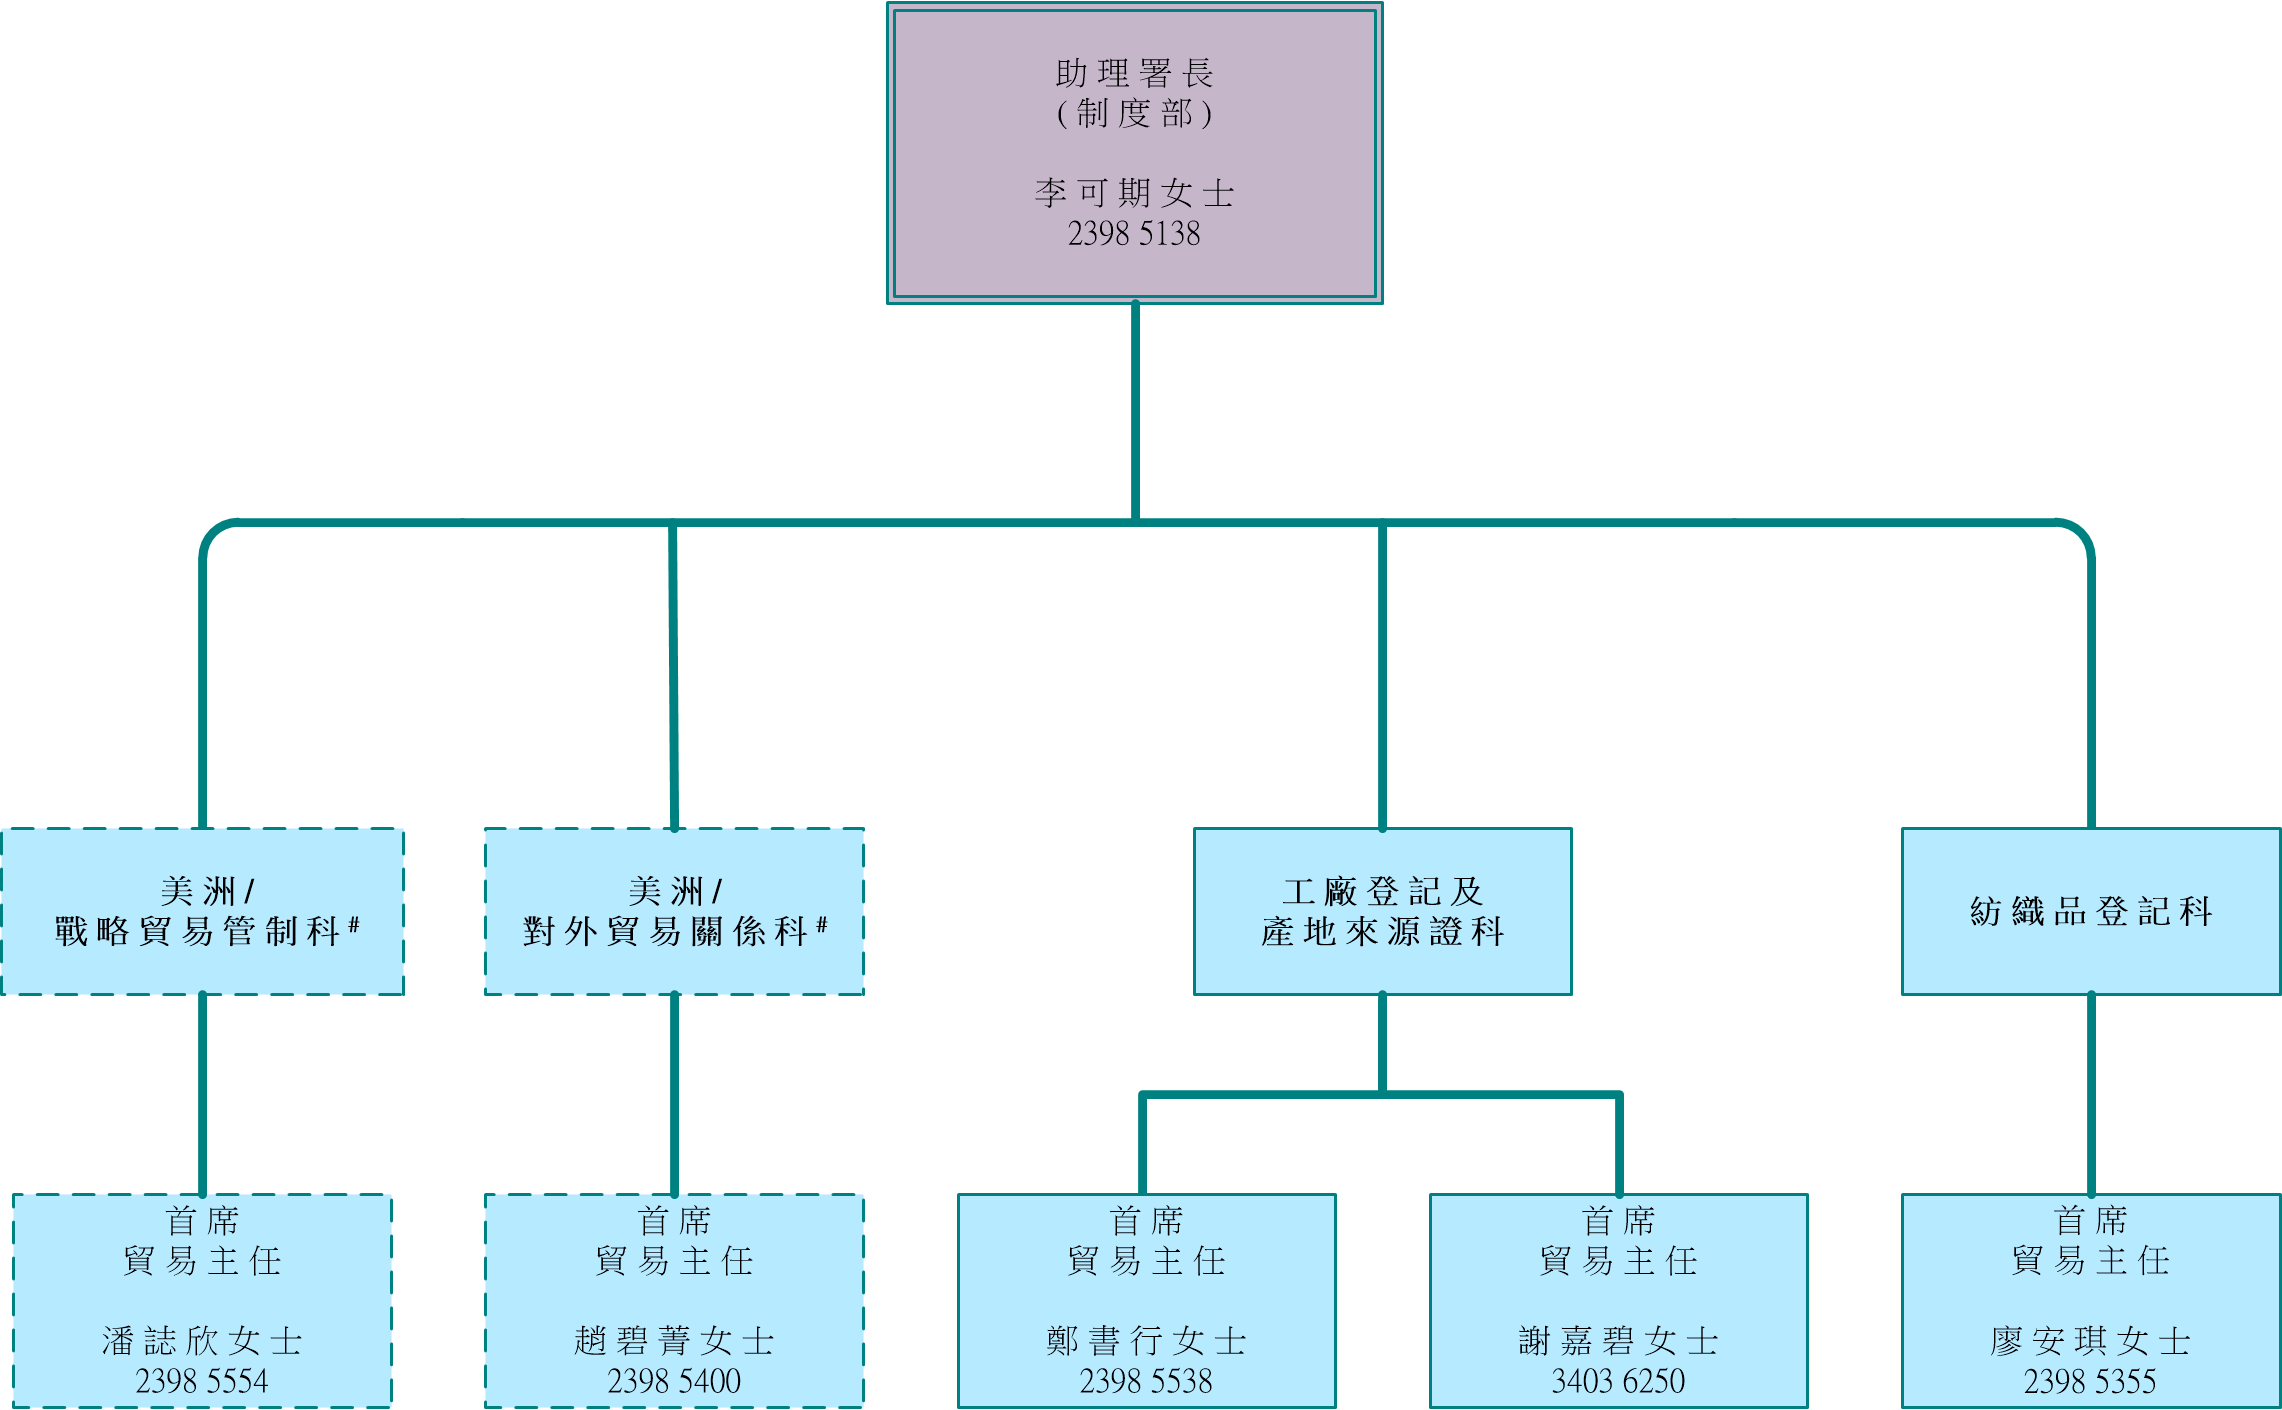 制 度 部 組 織 架 構 圖 ( 內 容 請 見 下 文 )